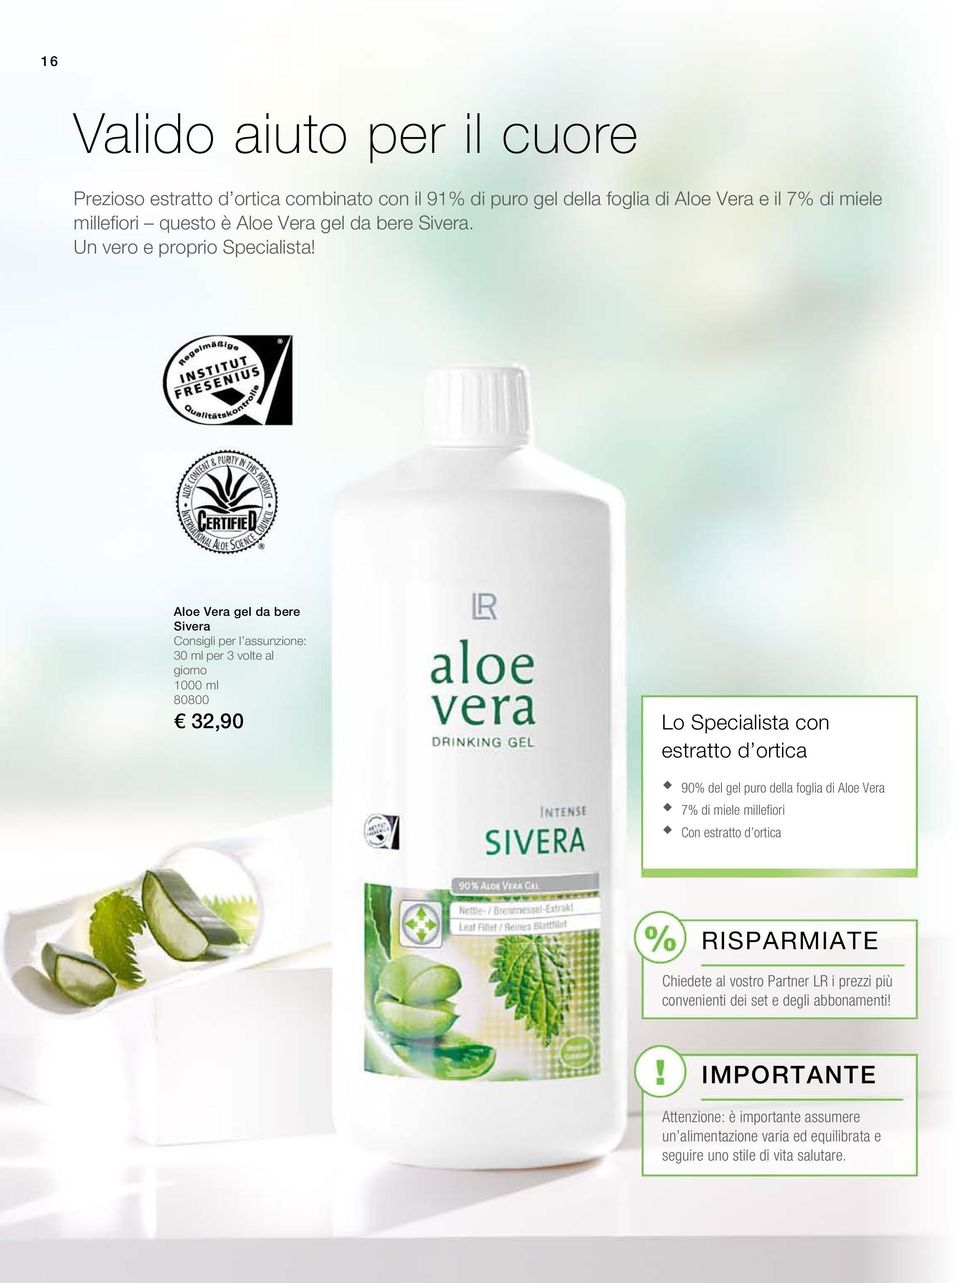 Aloe Vera gel da bere Sivera Consigli per l assunzione: 30 ml per 3 volte al giorno 1000 ml 80800 32,90 Lo Specialista con estratto d ortica 90% del gel puro della